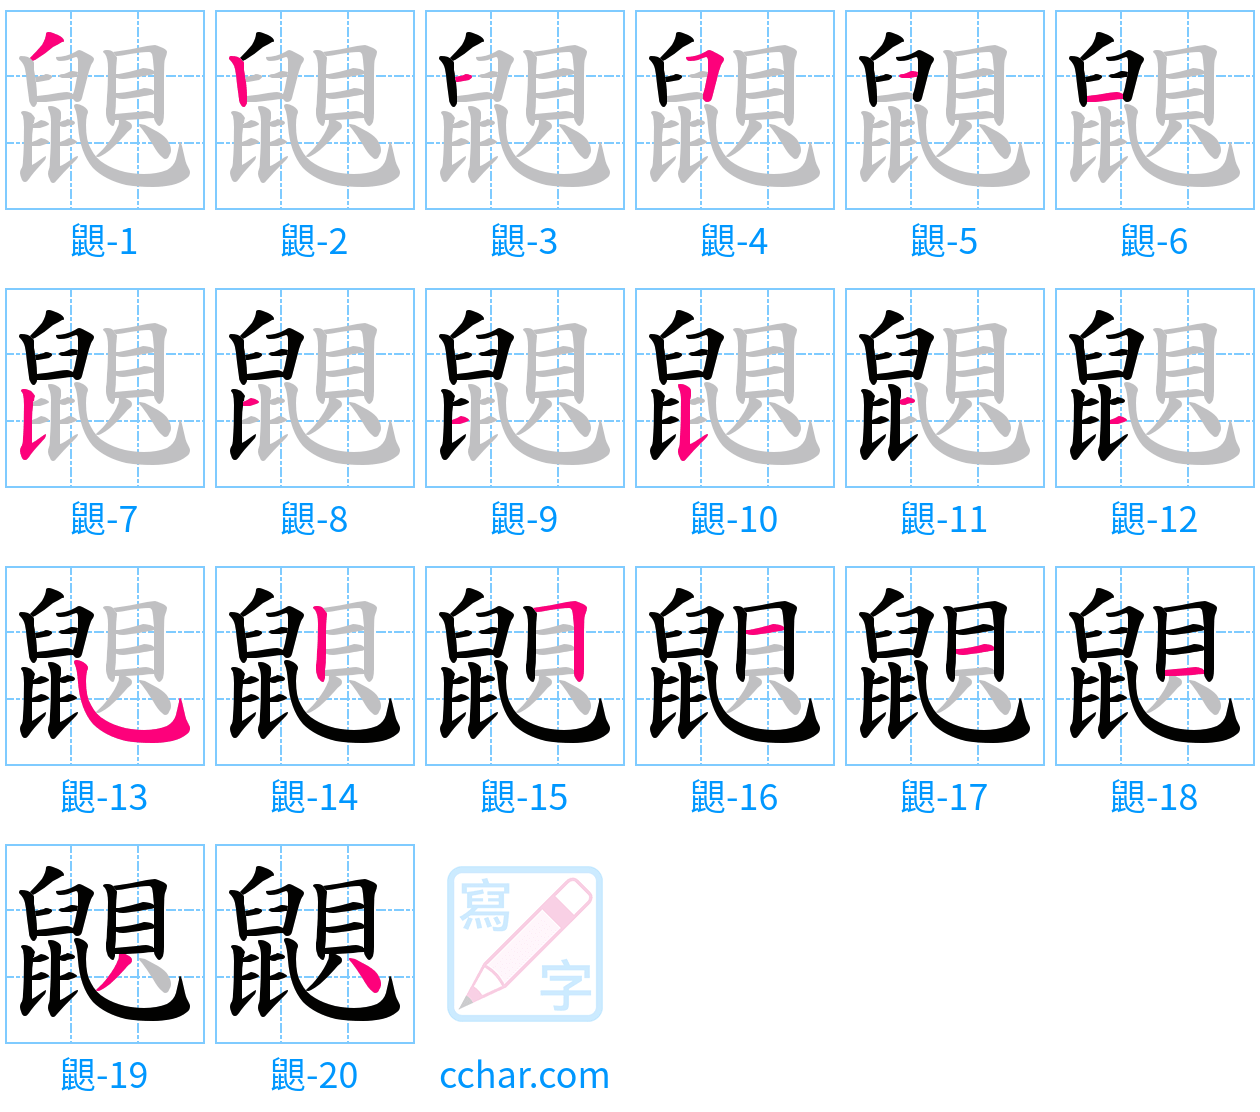 鼰 stroke order step-by-step diagram